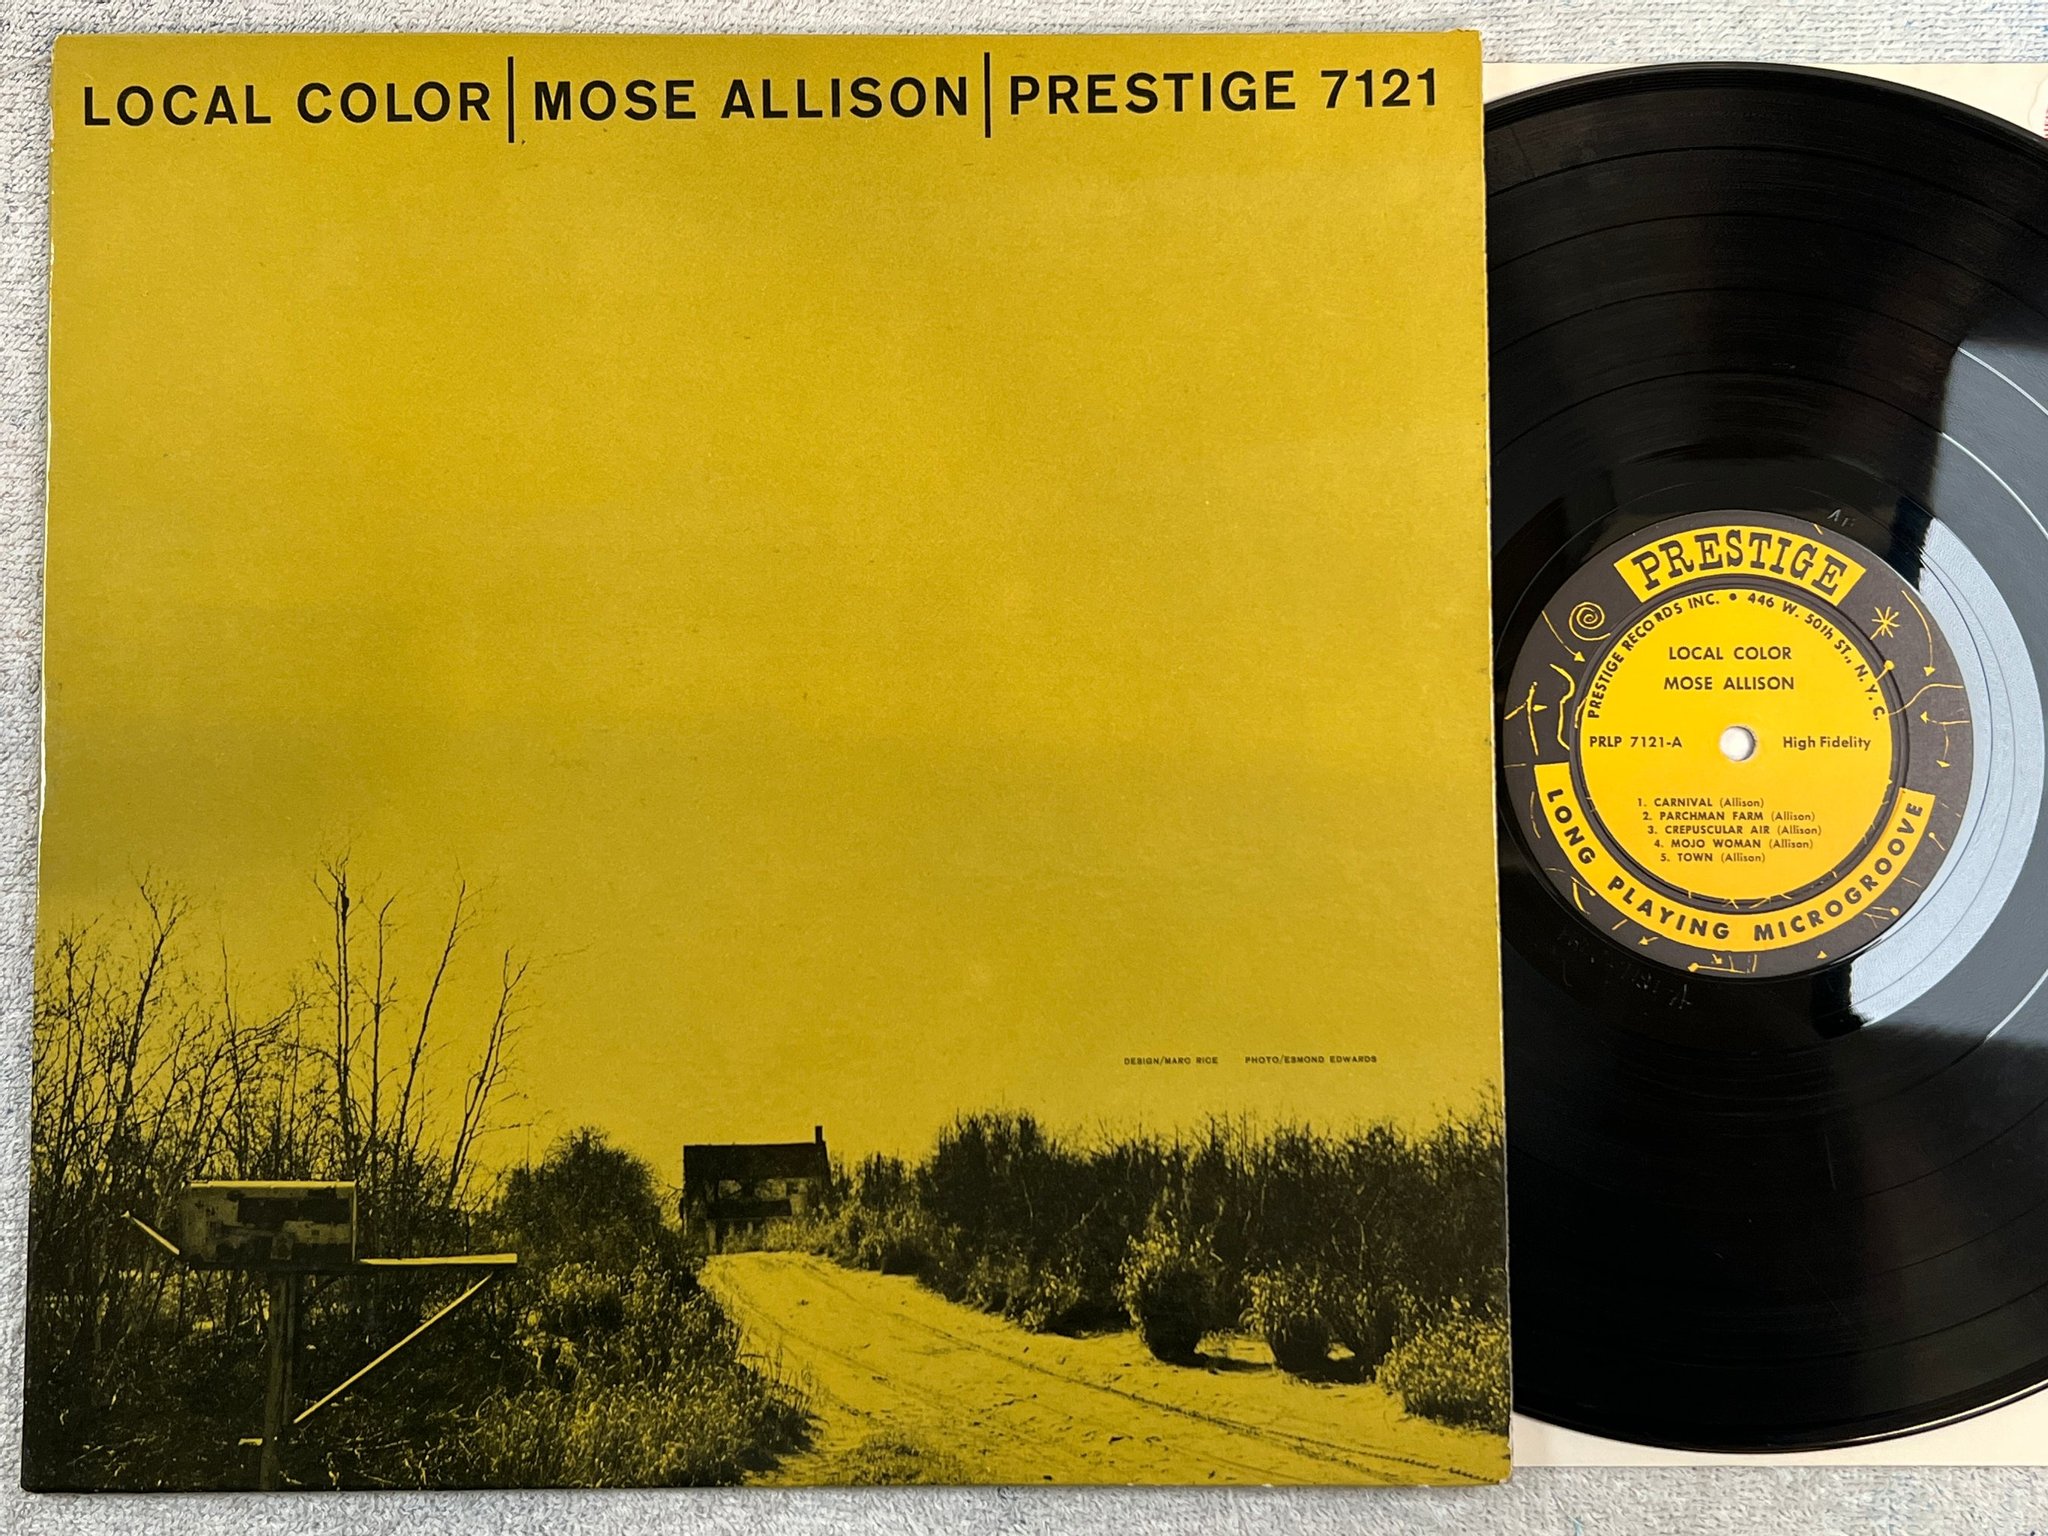 Omslagsbild för skivan MOSE ALLISON local color LP -58 US PRESTIGE PRLP 7121 446 W. 50th St NYC adress